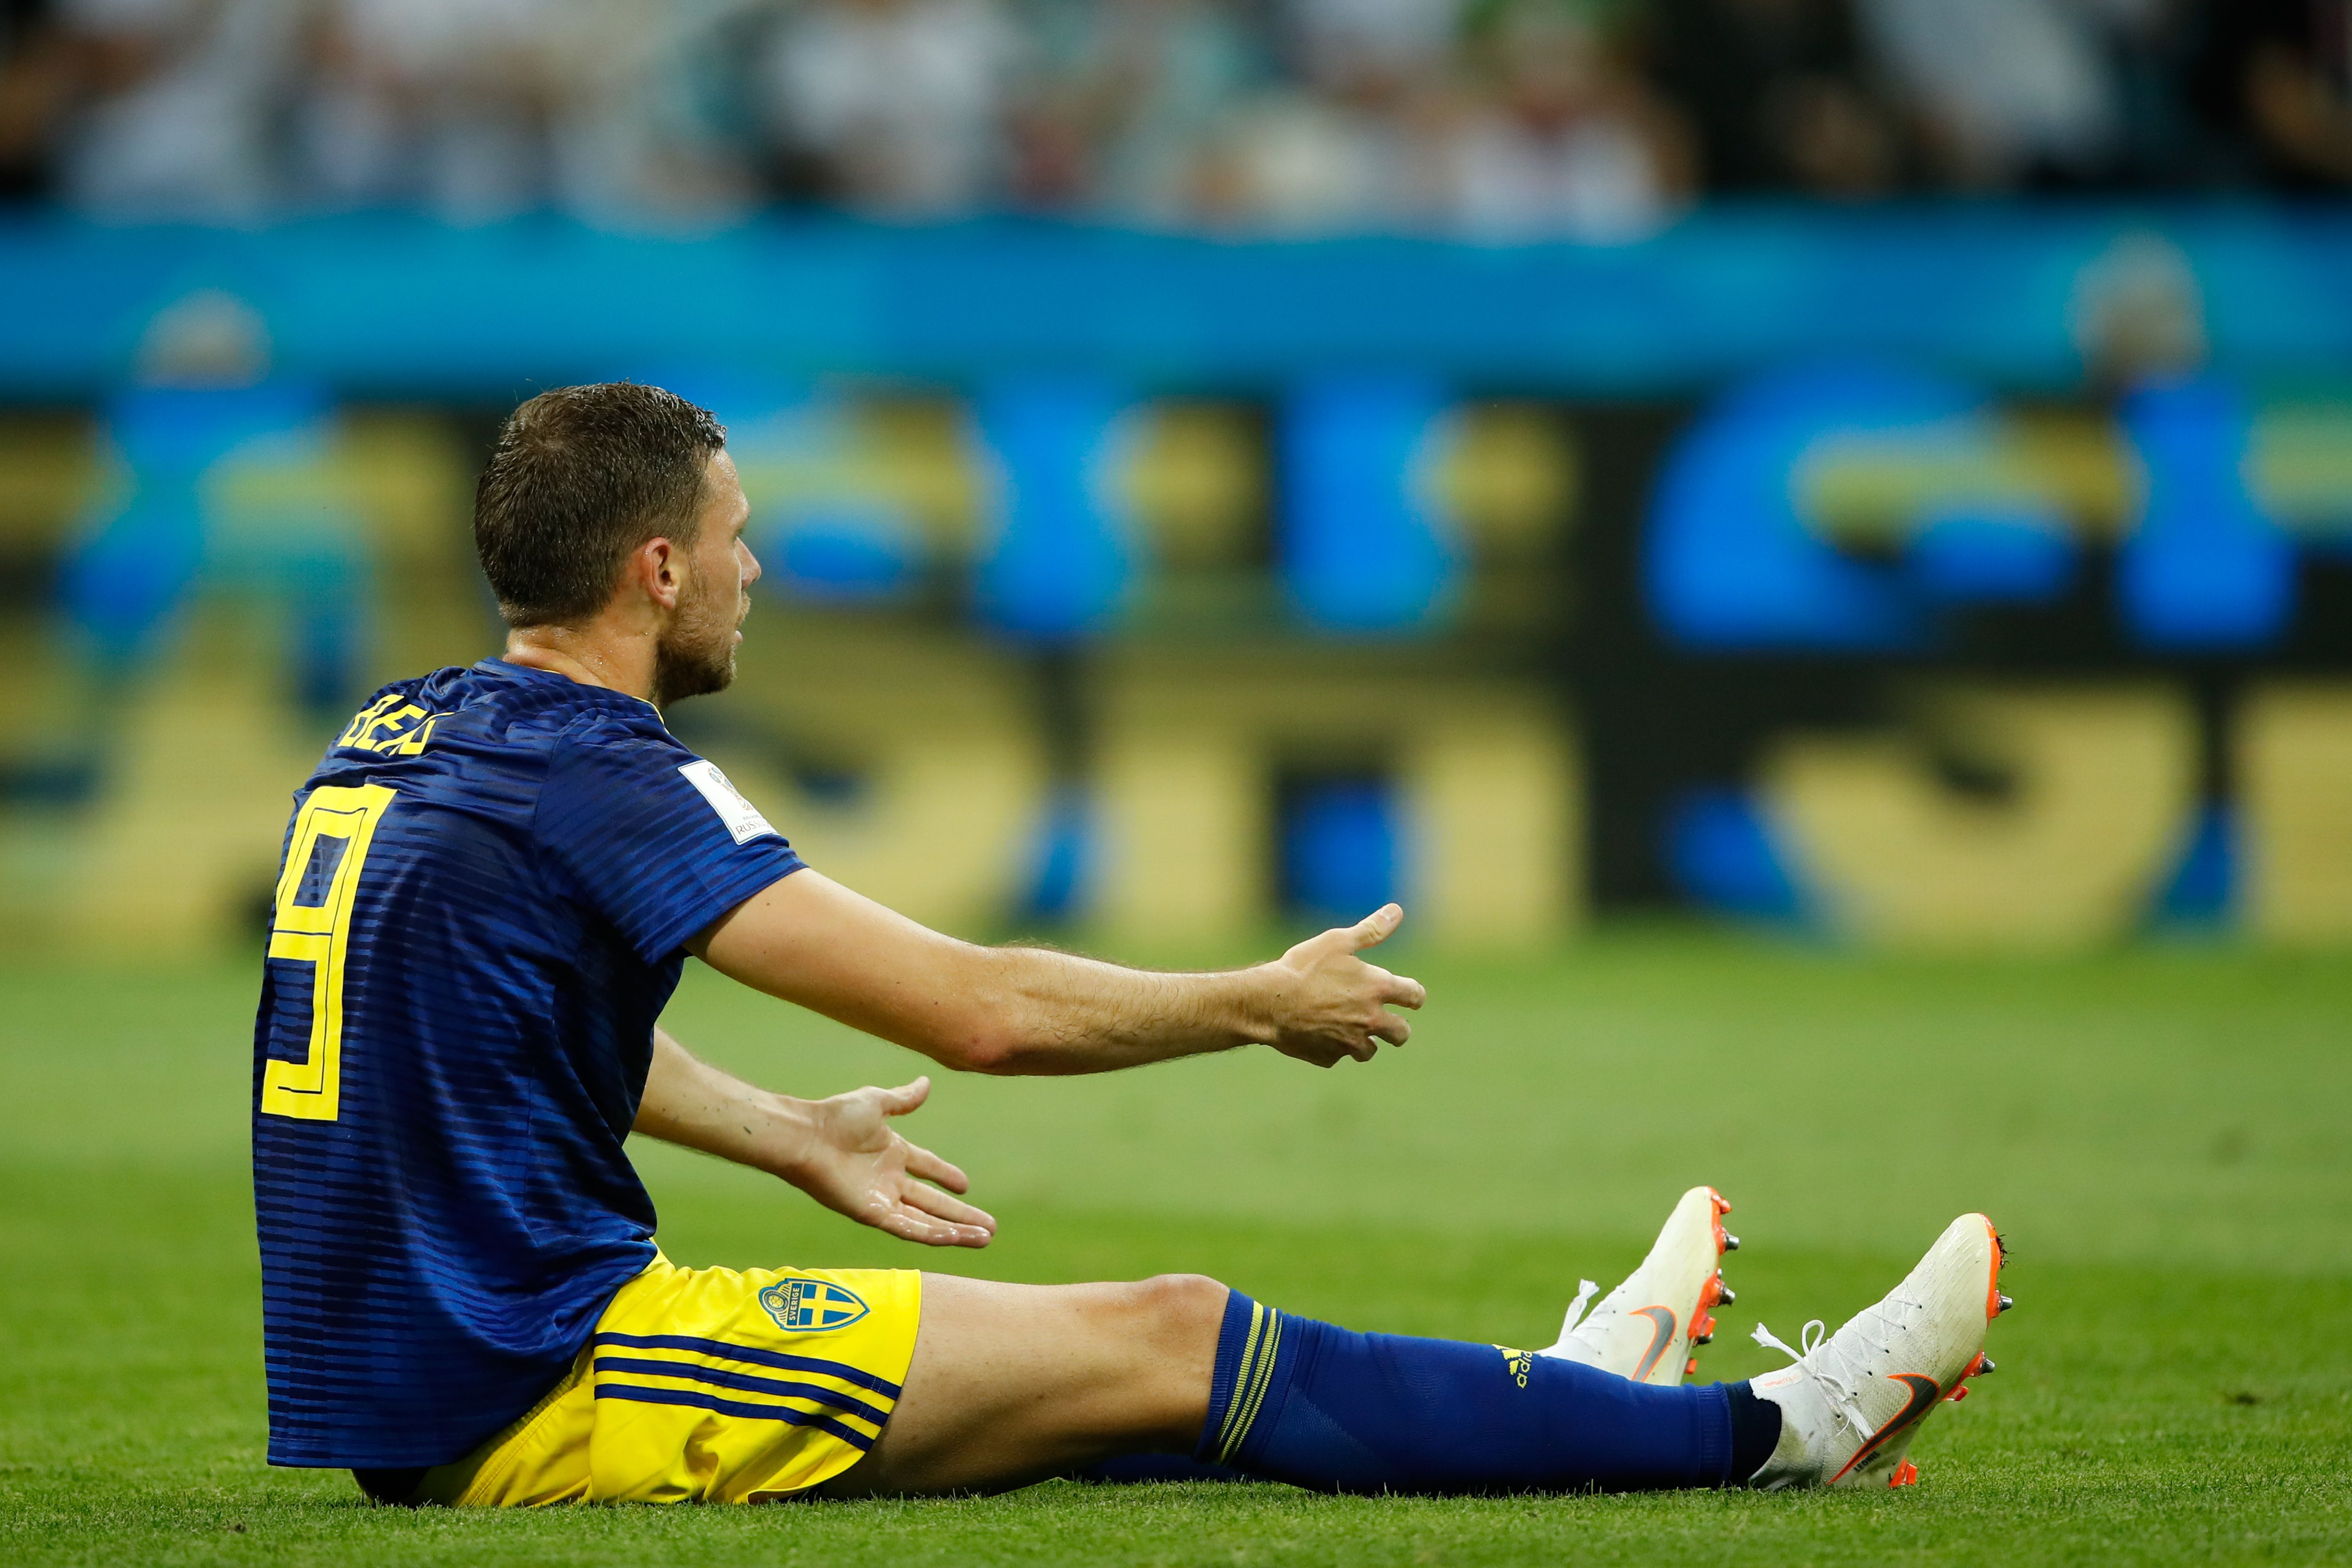 Suécia derrota Argentina e avança para oitavas como líder do Grupo